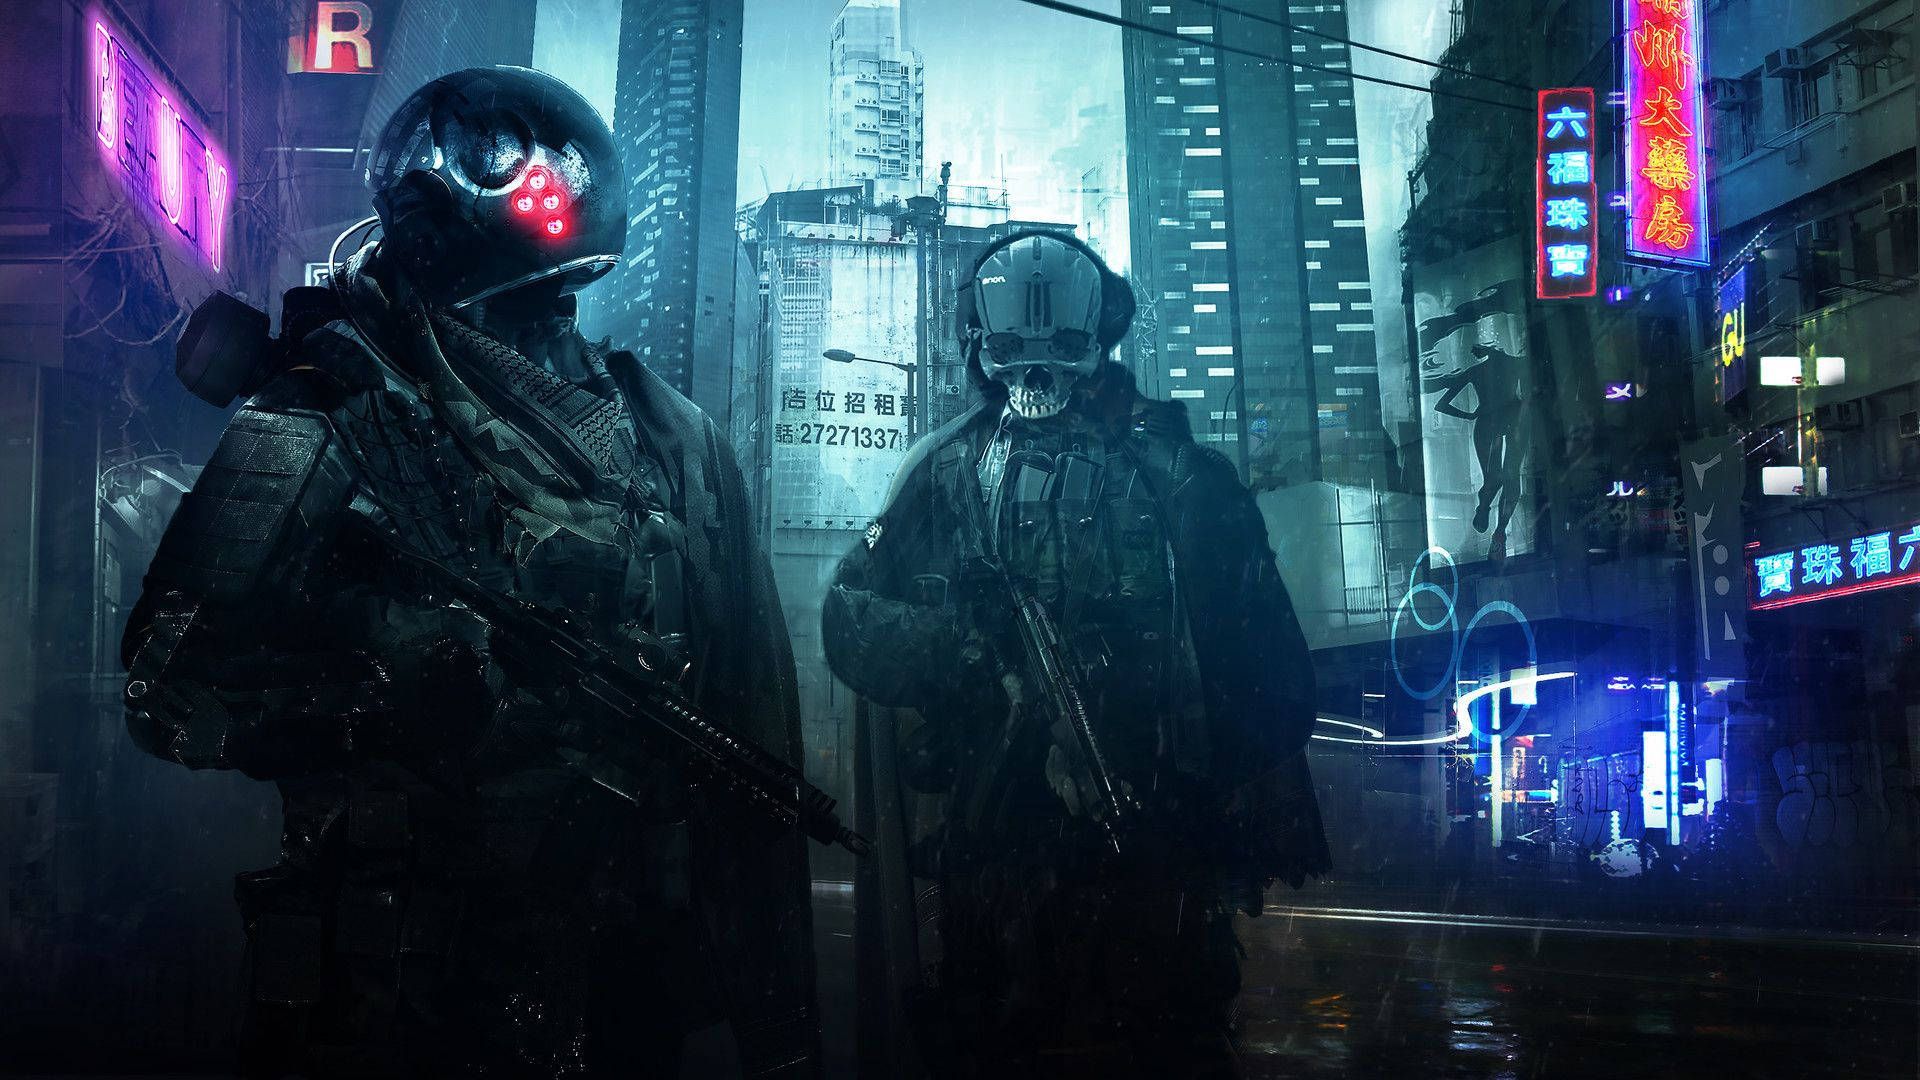 A mysterious cyberpunk warrior strolling a neon-lit city Wallpaper